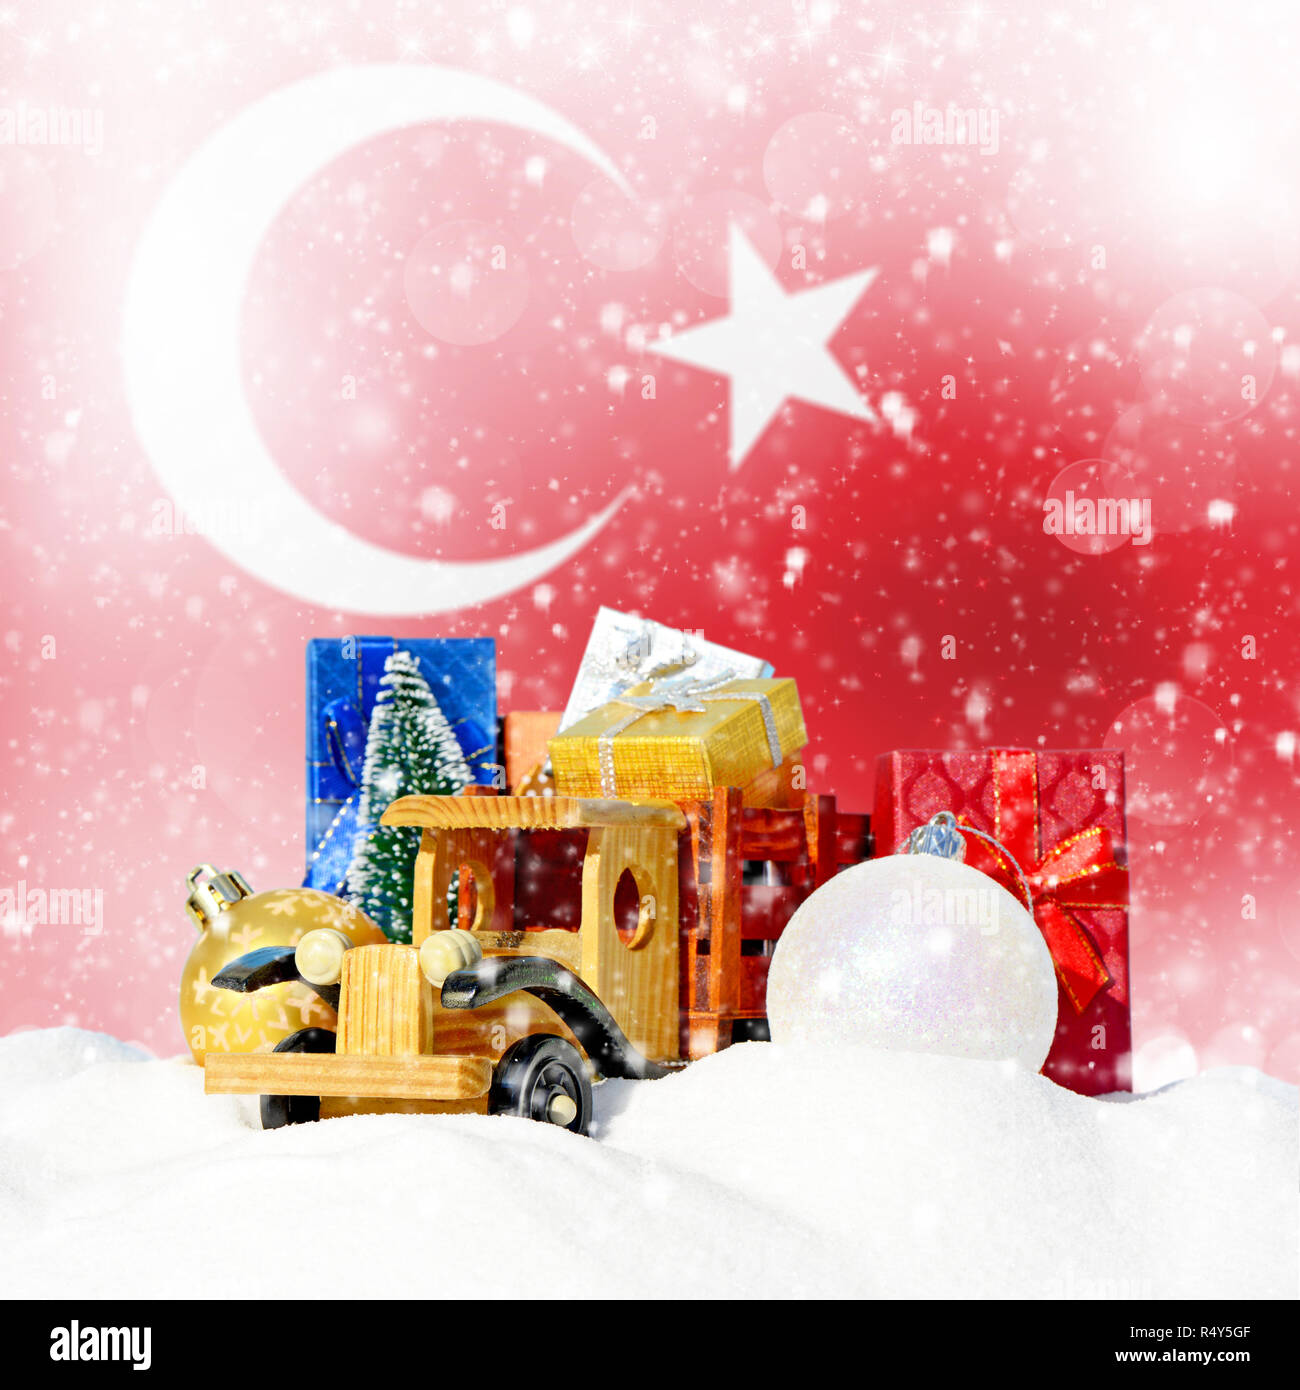 Weihnachten Hintergrund. Spielzeug-LKW mit Geschenken, Neues Jahr Tanne, Kugeln im Schneetreiben und Türkische Flagge Stockfoto